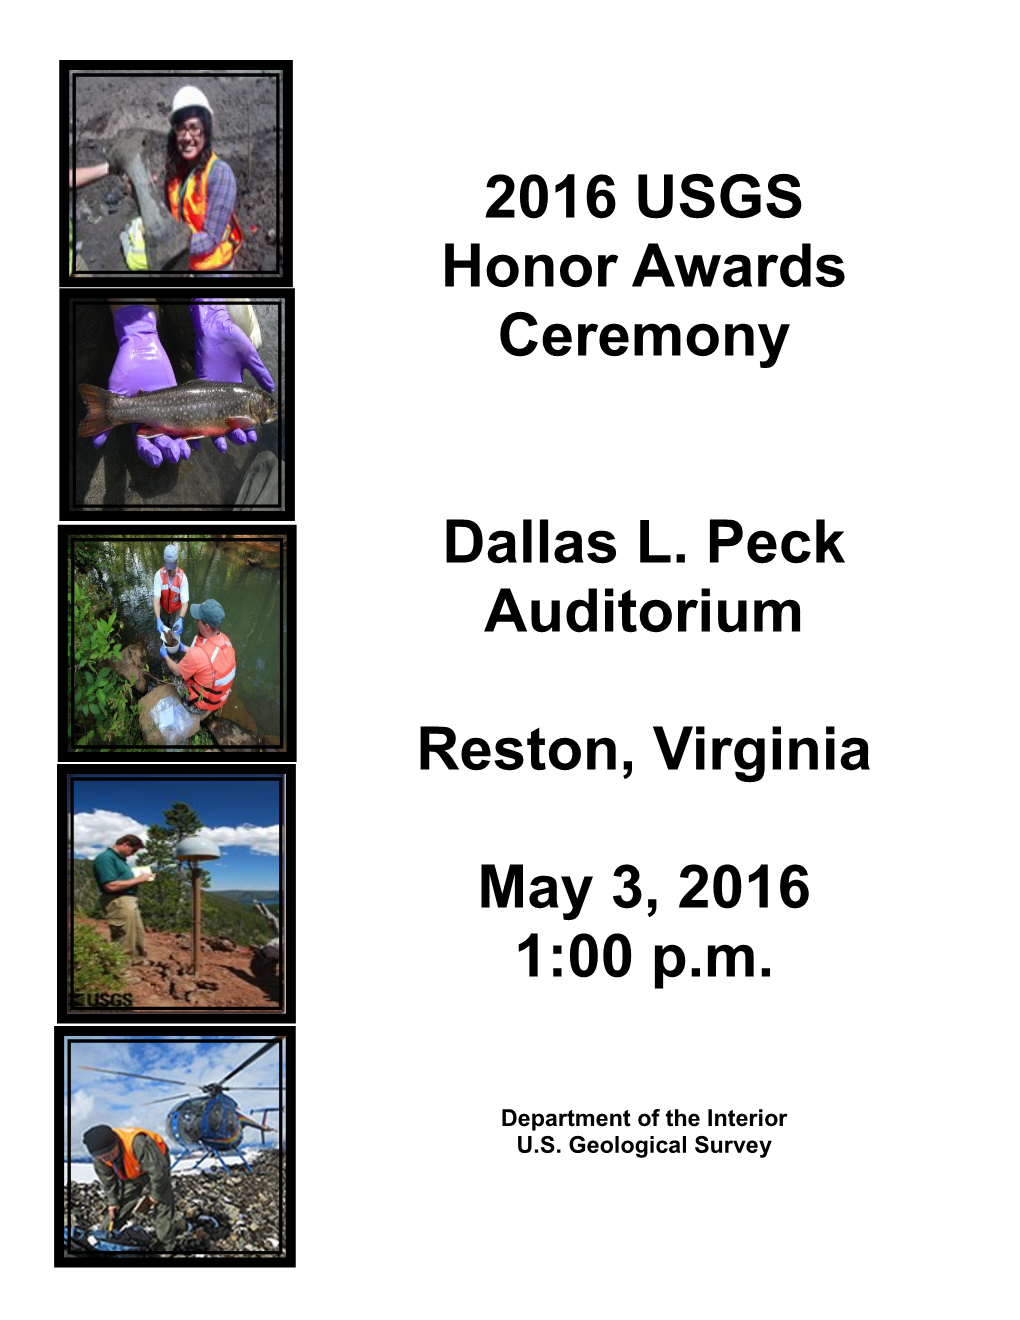 2016 USGS Honor Awards Ceremony Program